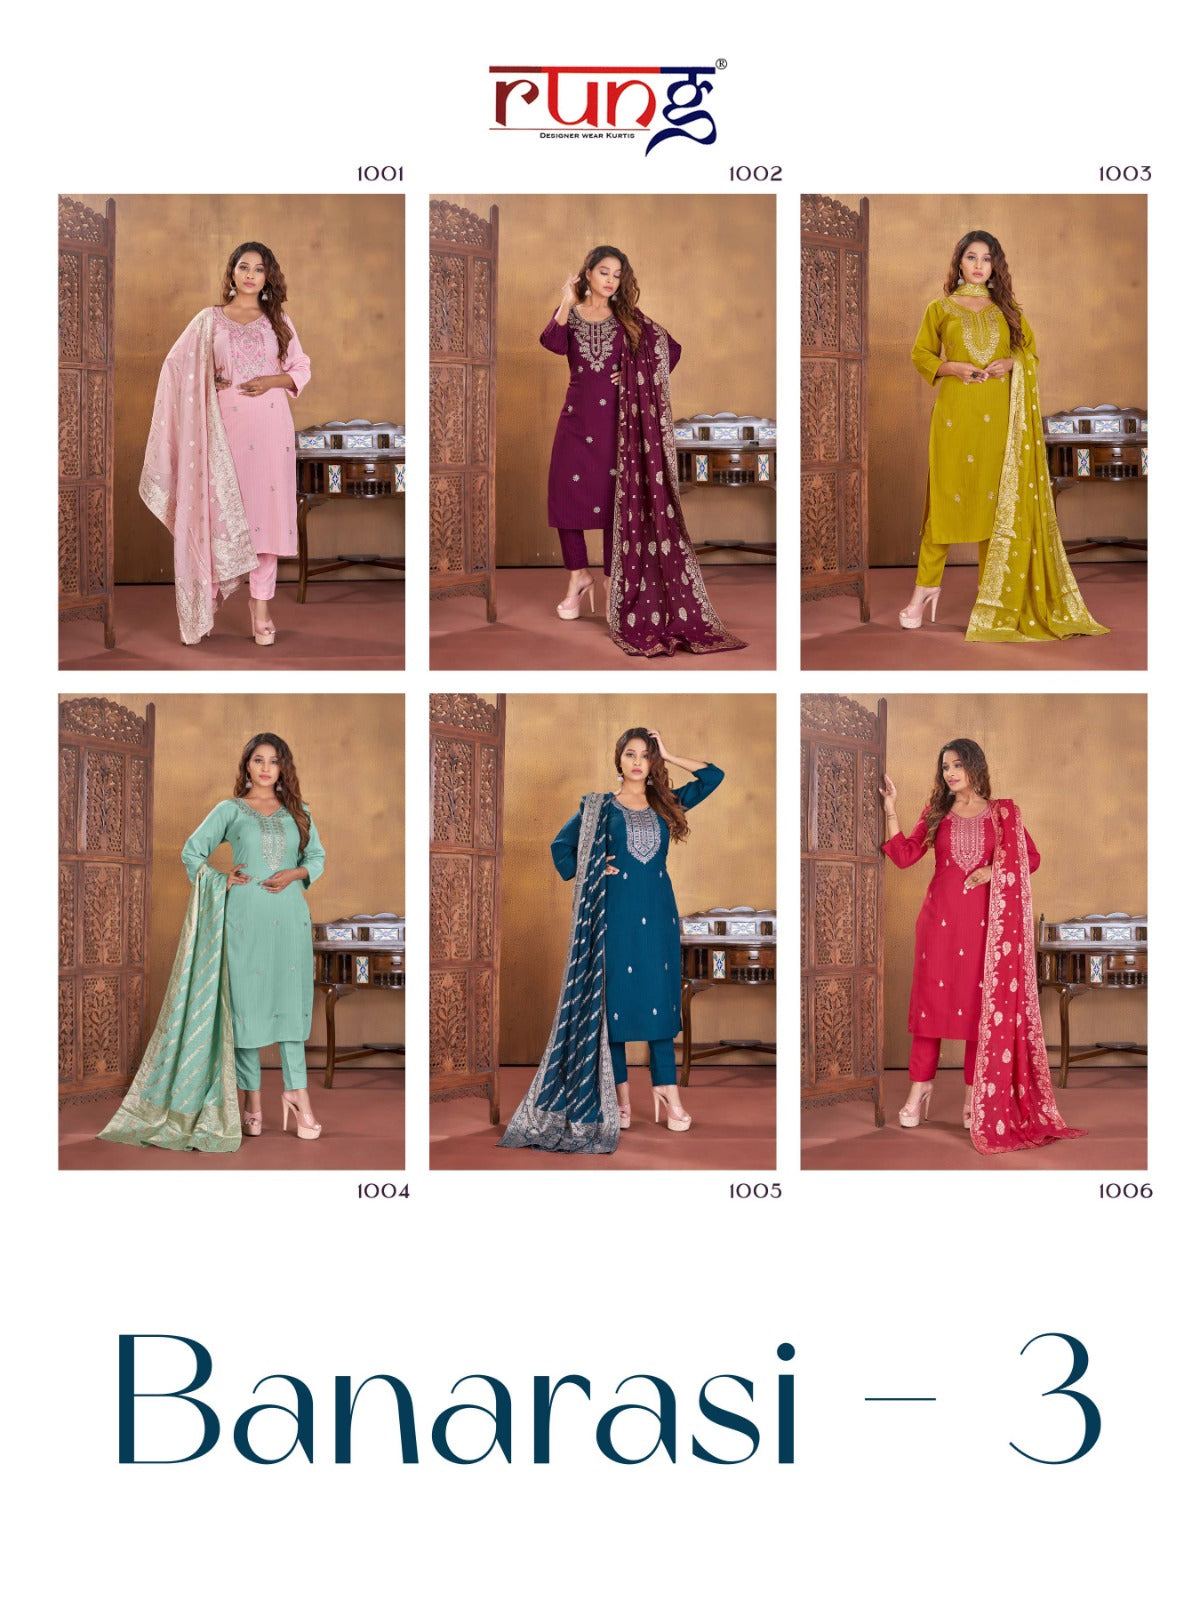 Banarasi - 3 Rung Rayon Readymade Pant Style Suits